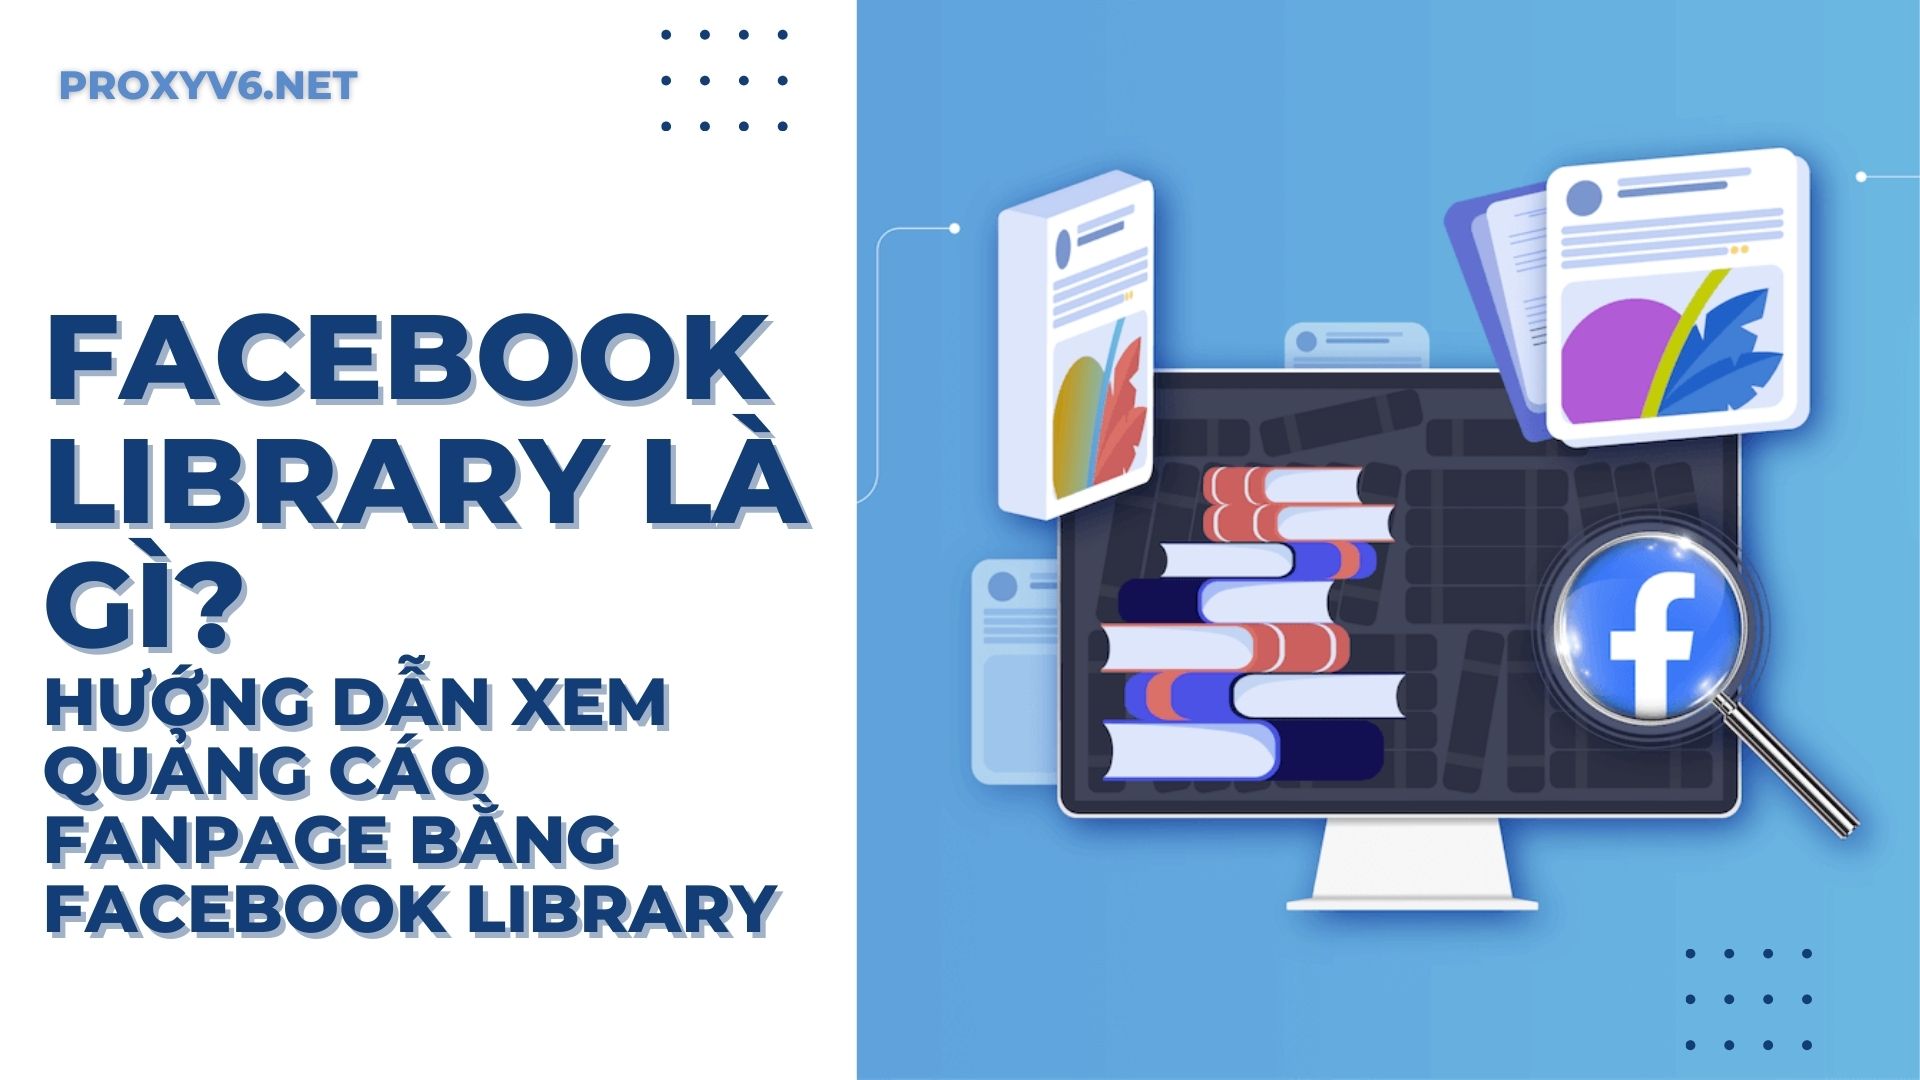 Facebook Library là gì? Hướng dẫn xem quảng cáo Fanpage bằng Facebook Library